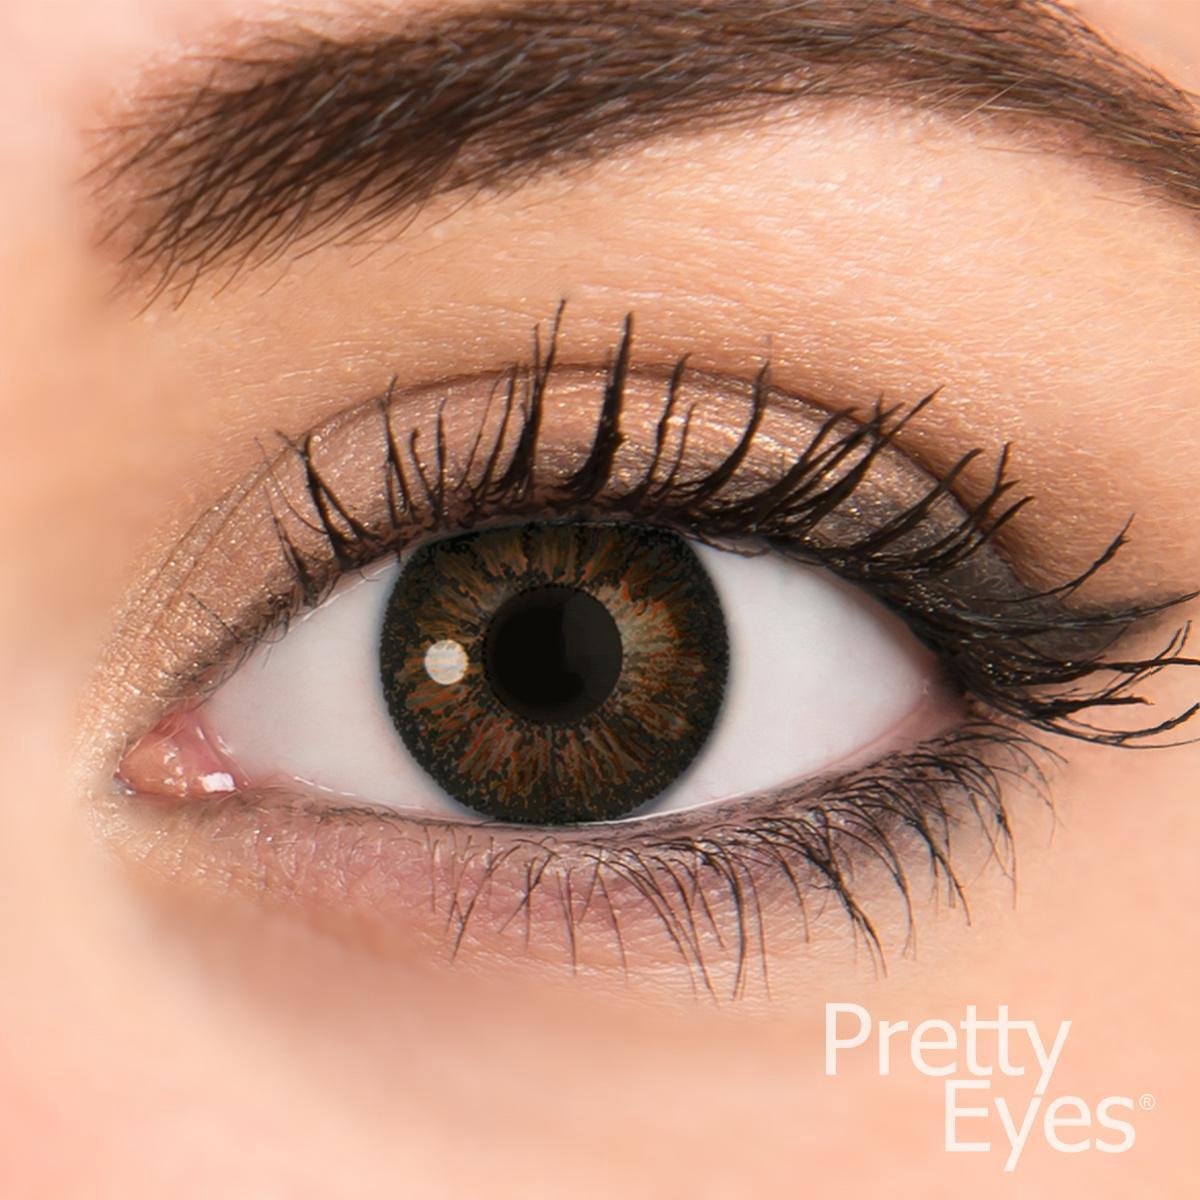 Pretty Eyes kleurlenzen - donker bruin - 2 stuks - maandlenzen